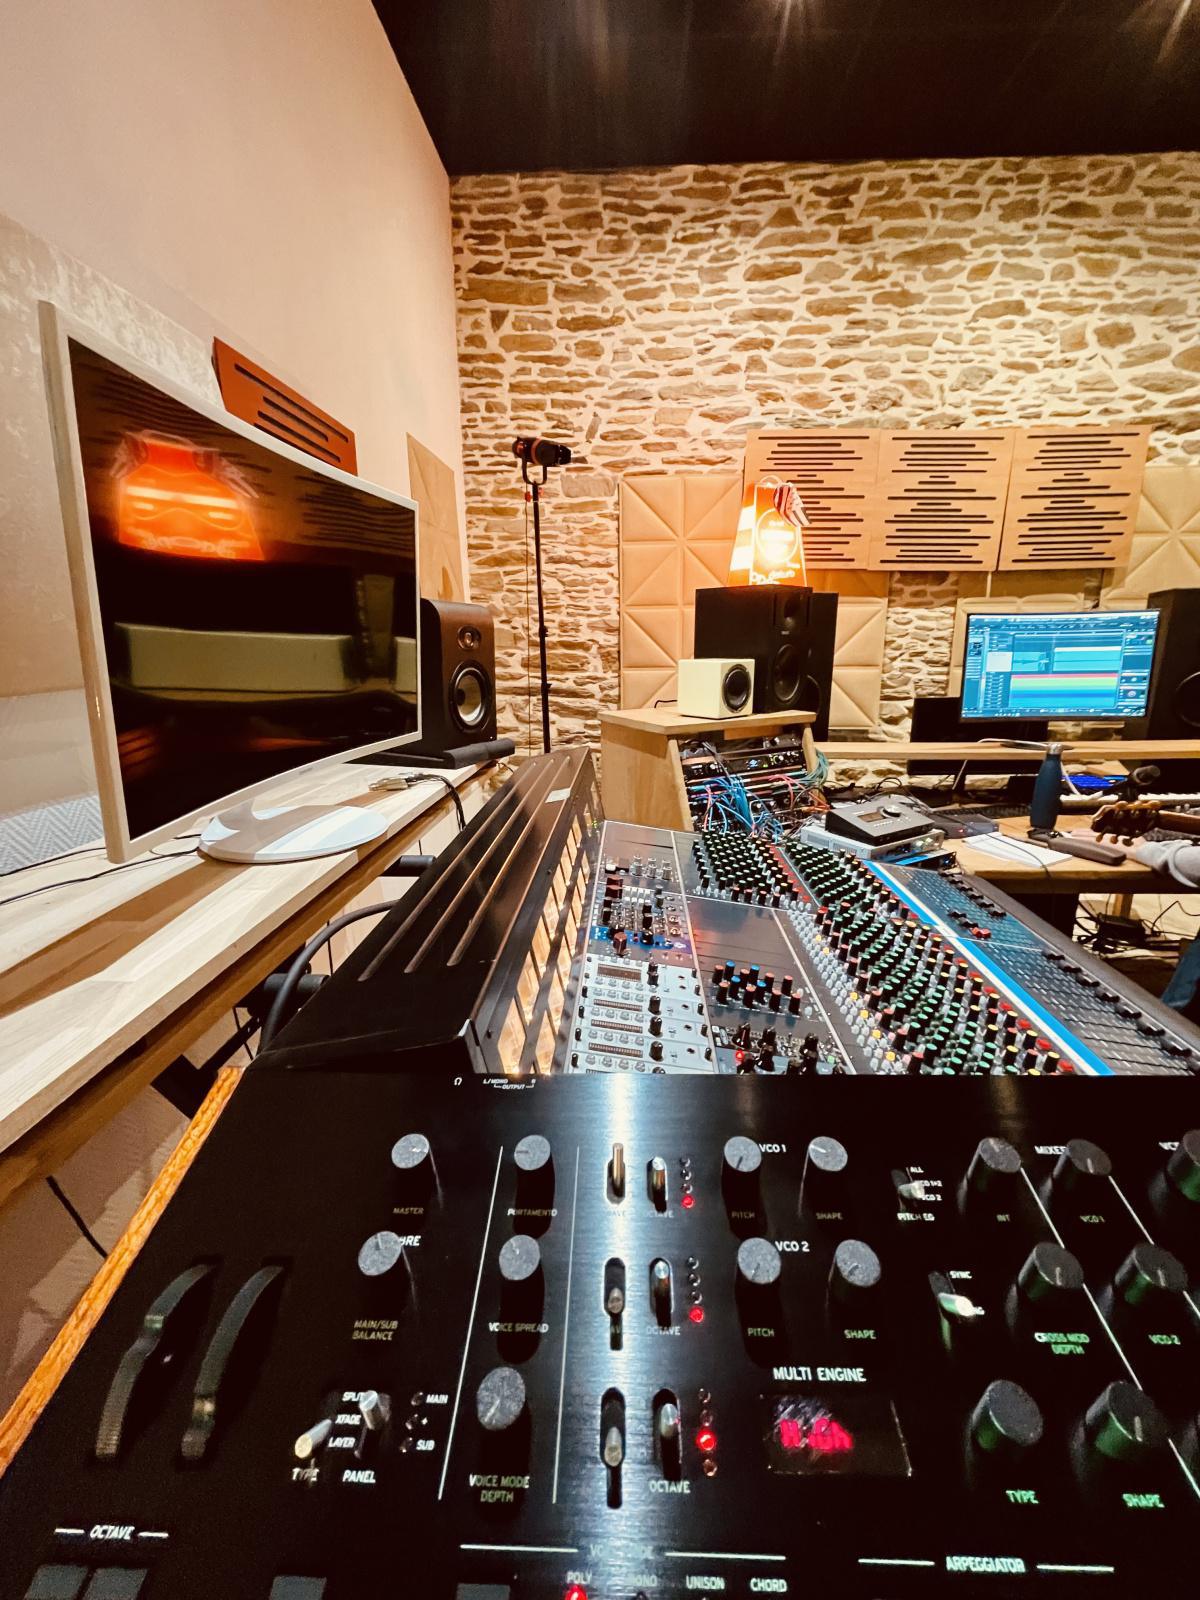 Recording studio rates (FR) in € - 2021/2022